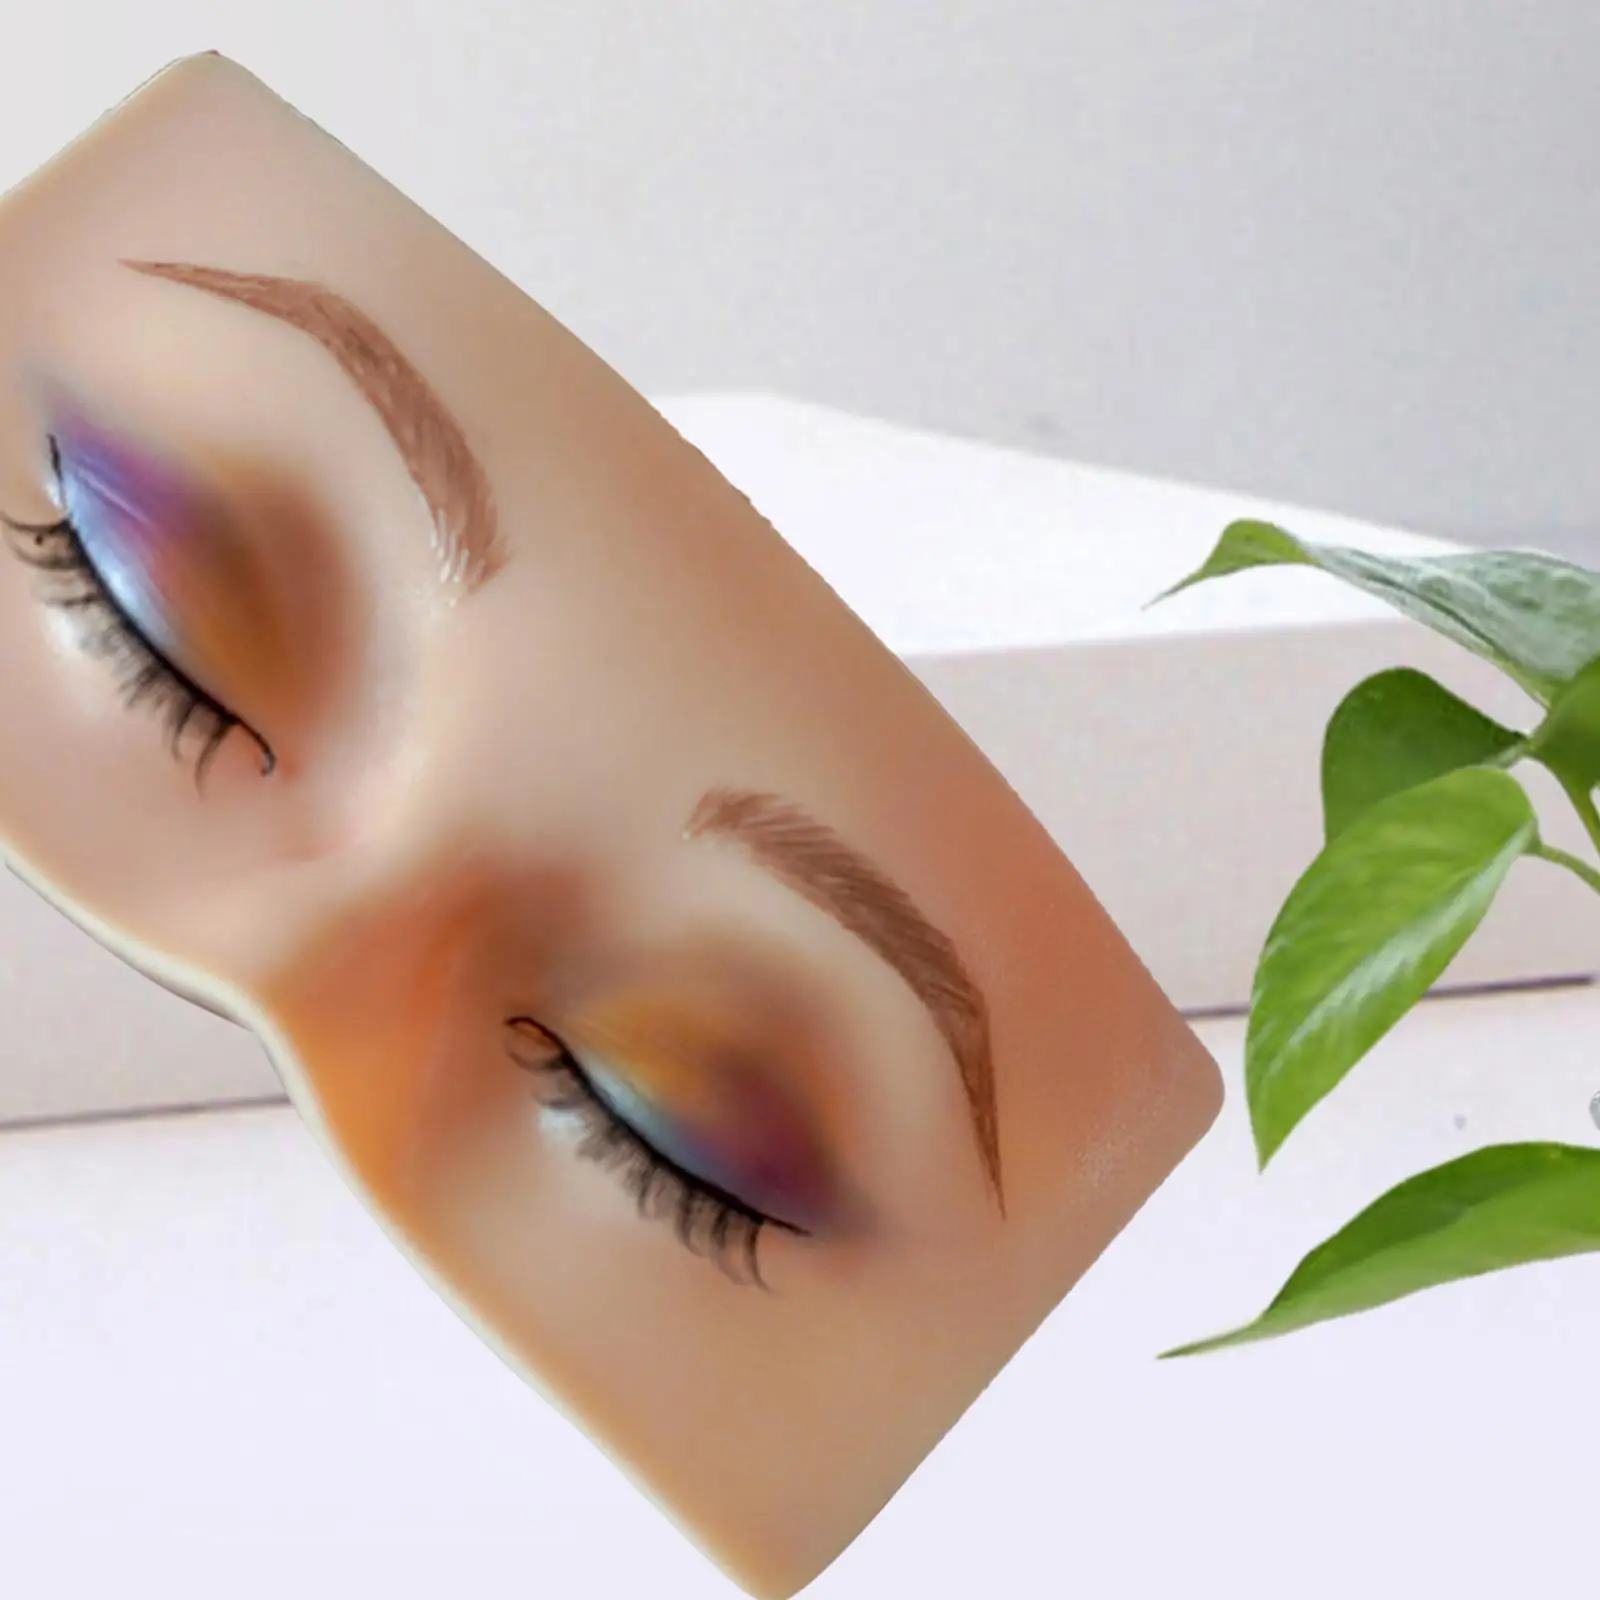 Makeup Practice board, 3D Realistic Pad, Makeup Makeup Practice Eyebrow Lash Training, face up